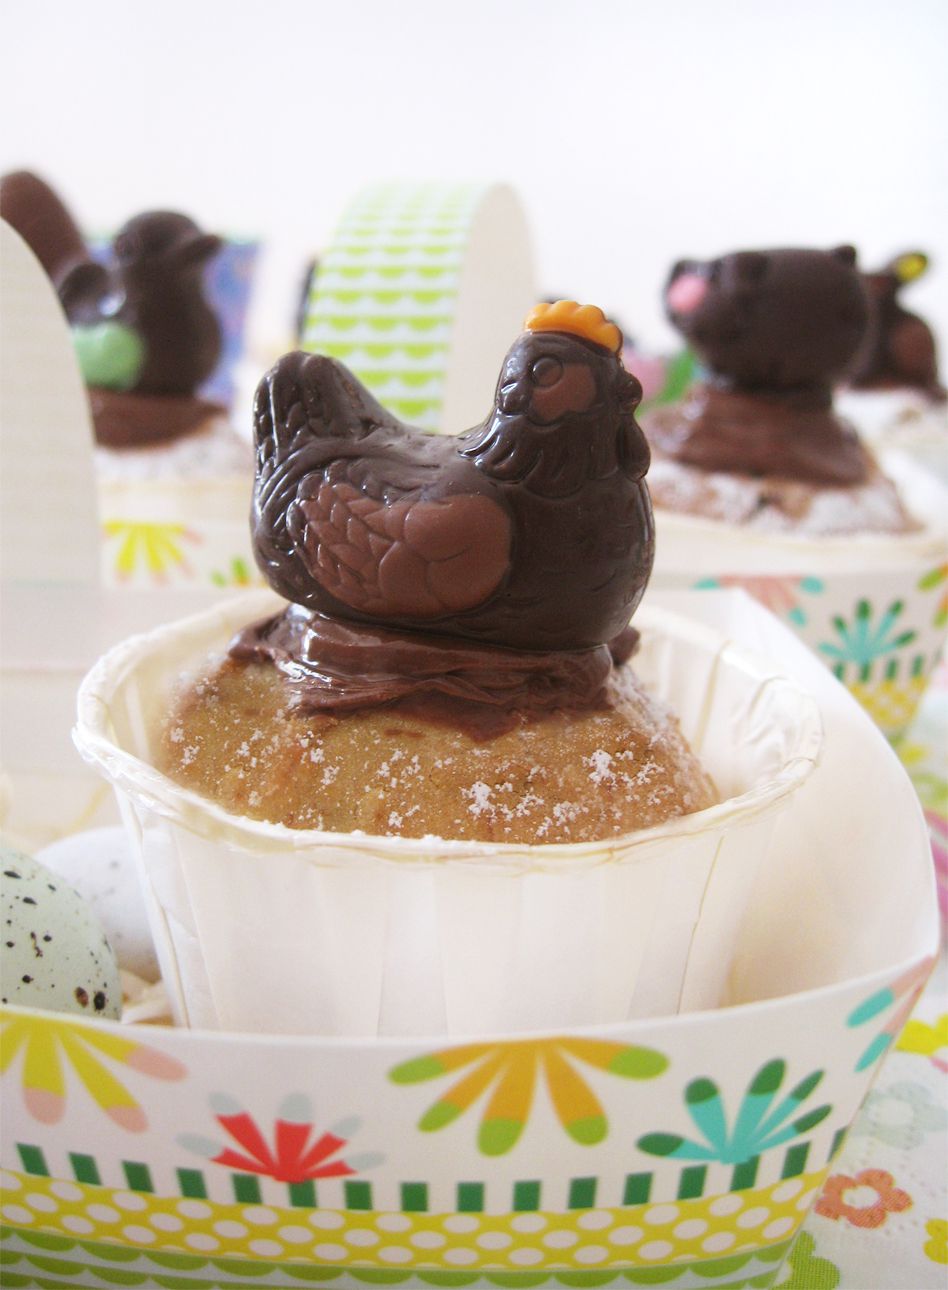 Cupcakes de Pâques &amp; ces petits chocolats de la ferme - Farm Easter cupcakes